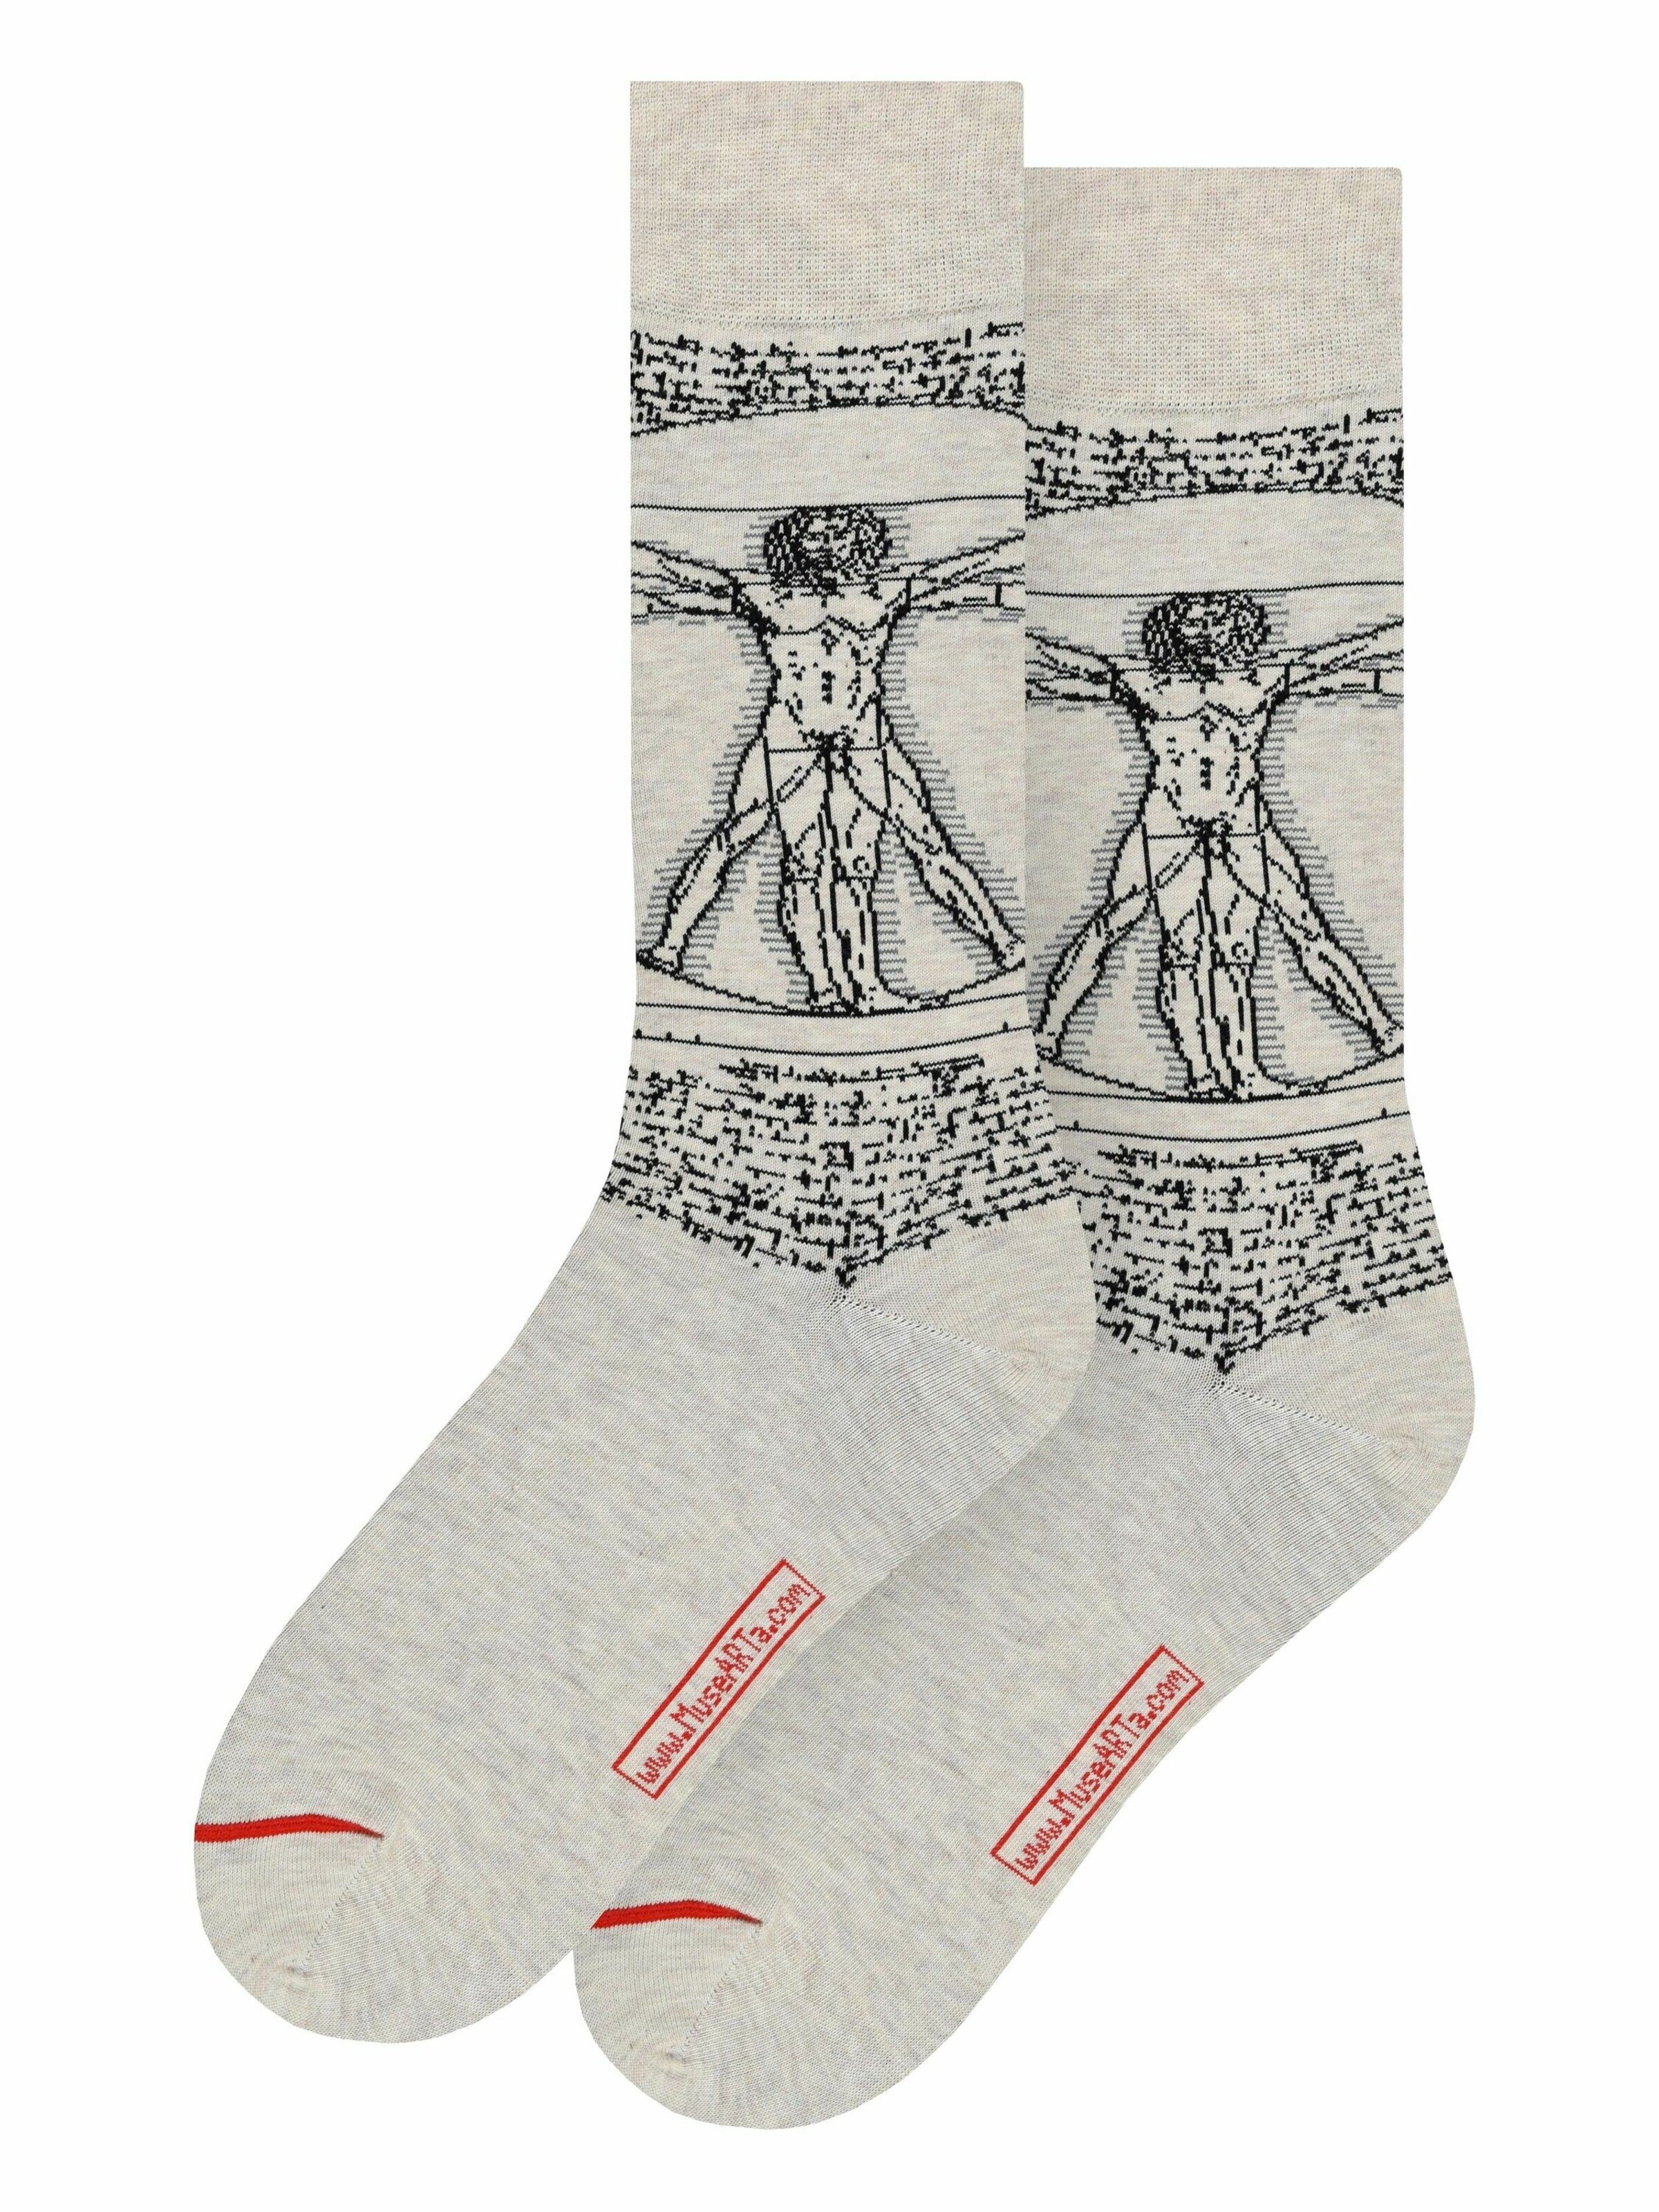 MuseARTa Socken Leonardo Da Vinci - The Vitruvian Man in Beige 